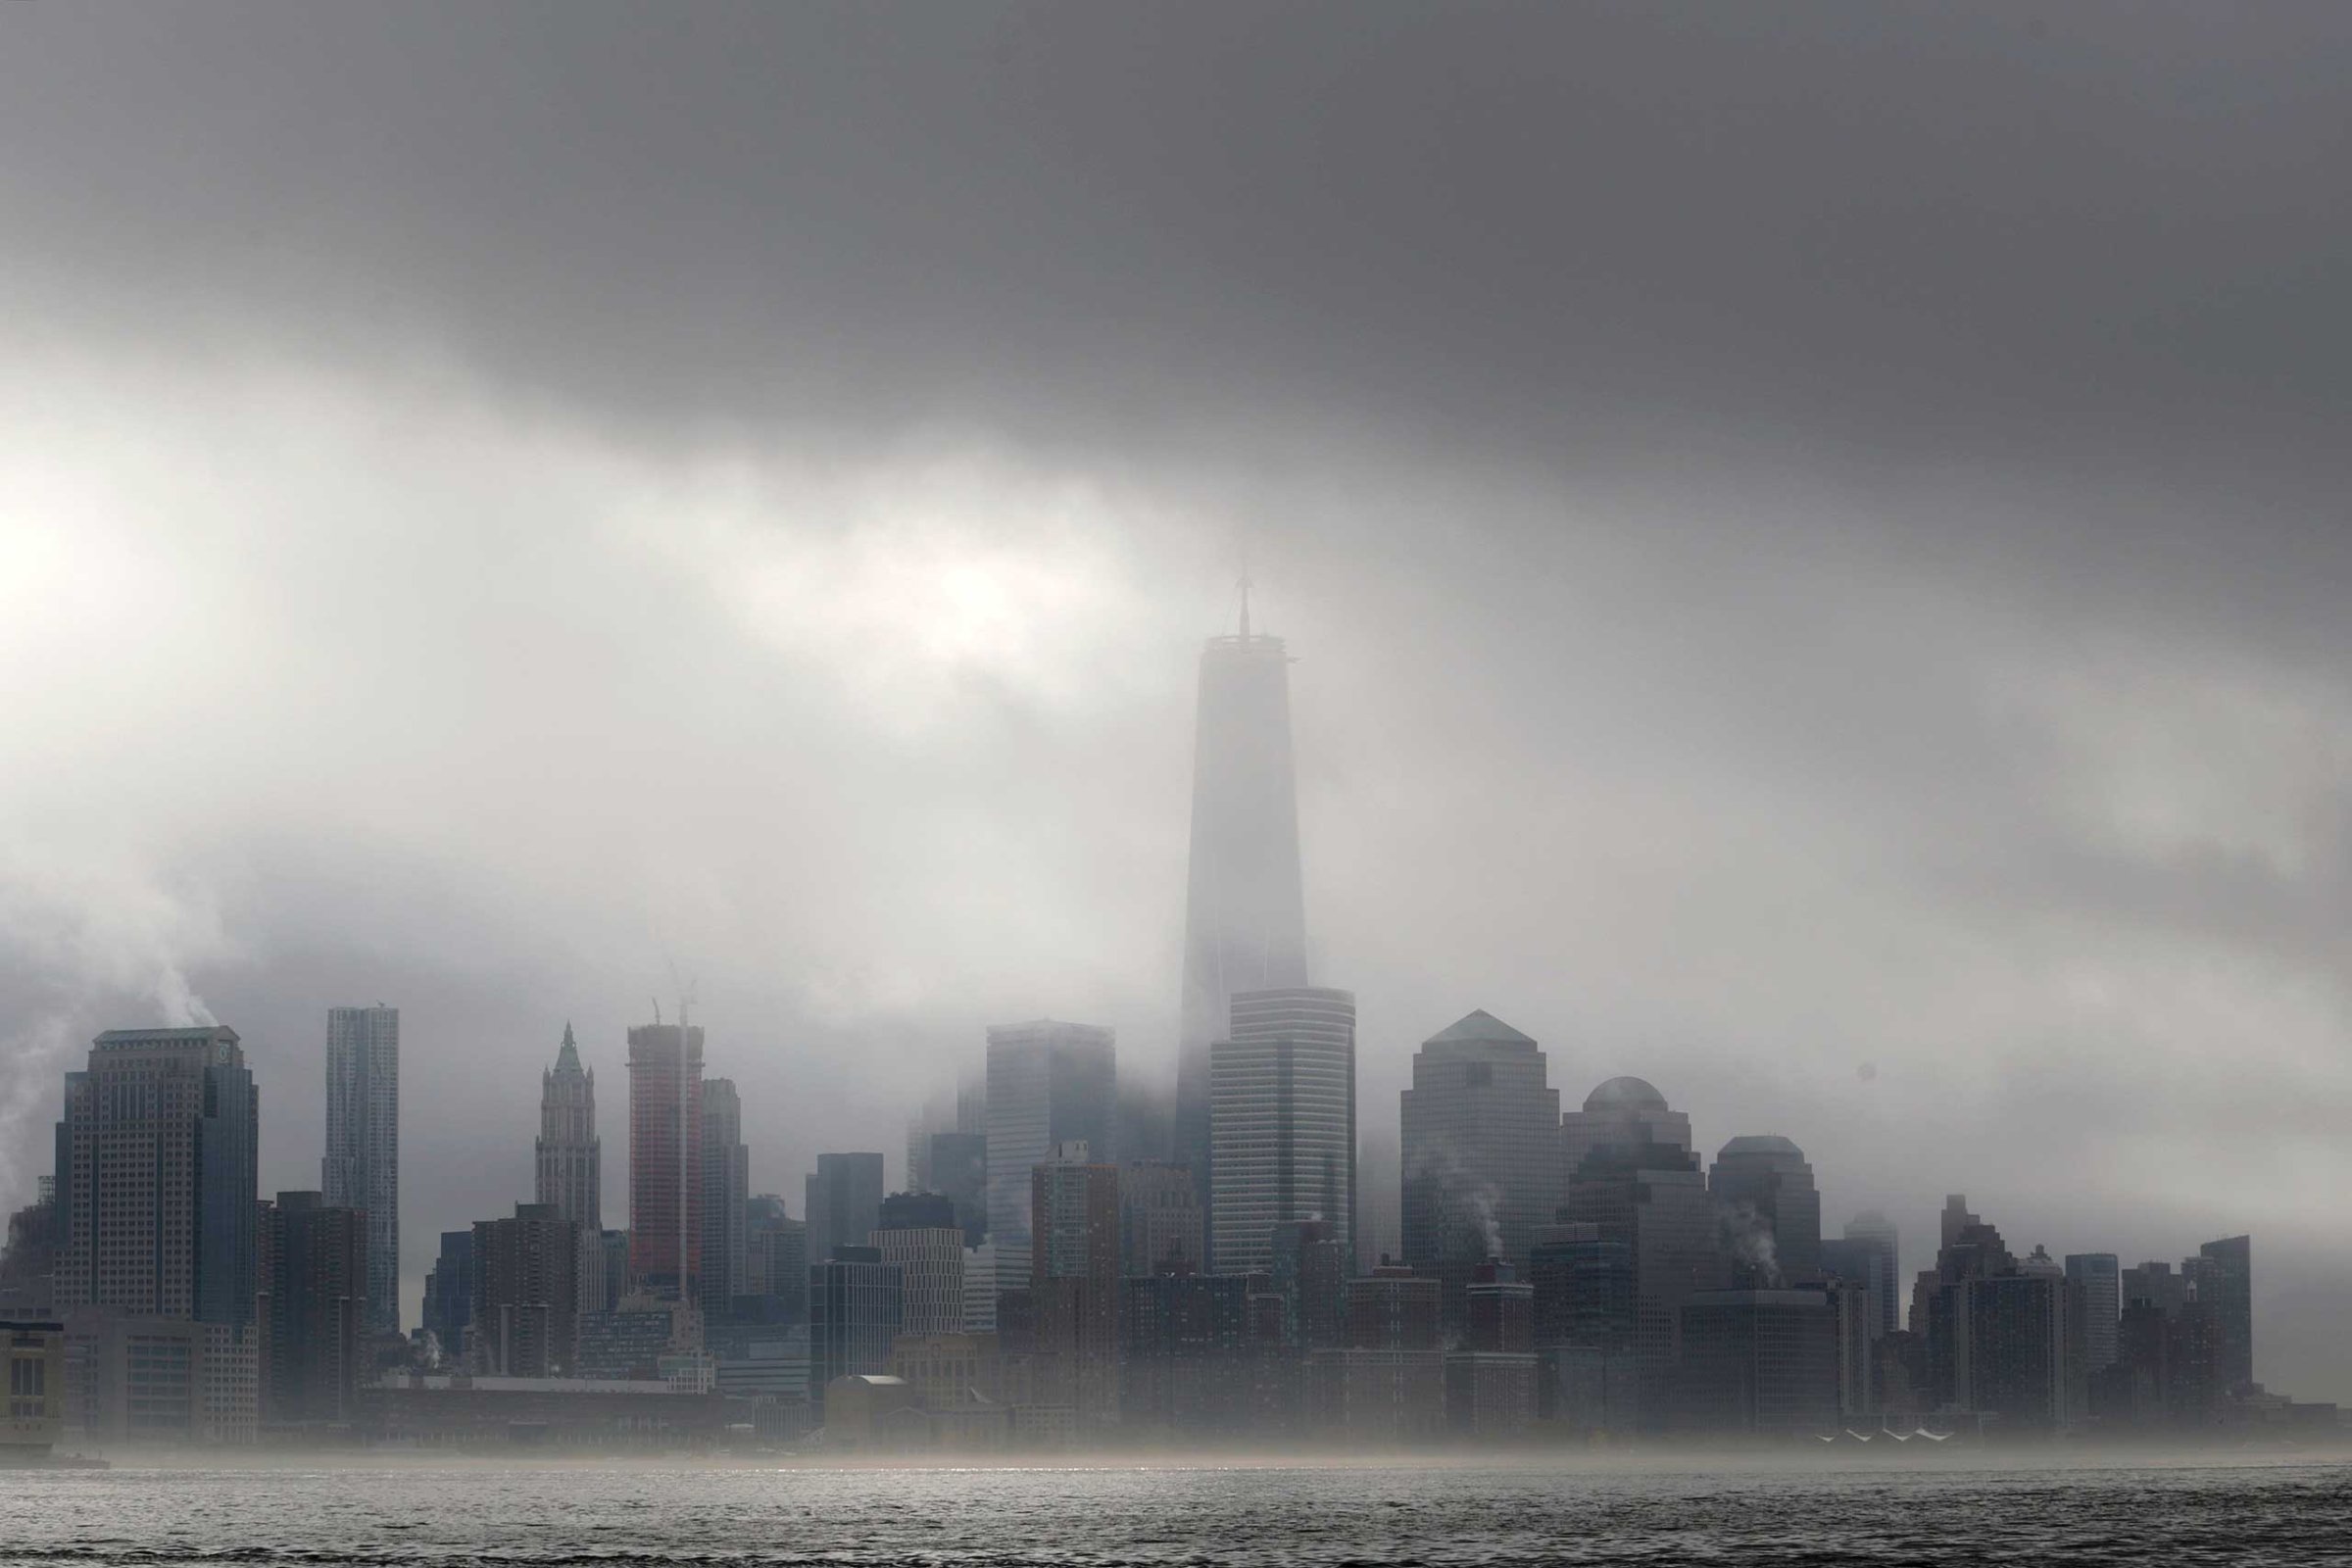 Heavy fog blankets lower Manhattan in New York, including One World Trade Center, center, in this view across the Hudson River from Hoboken, N.J., Nov. 12, 2014.